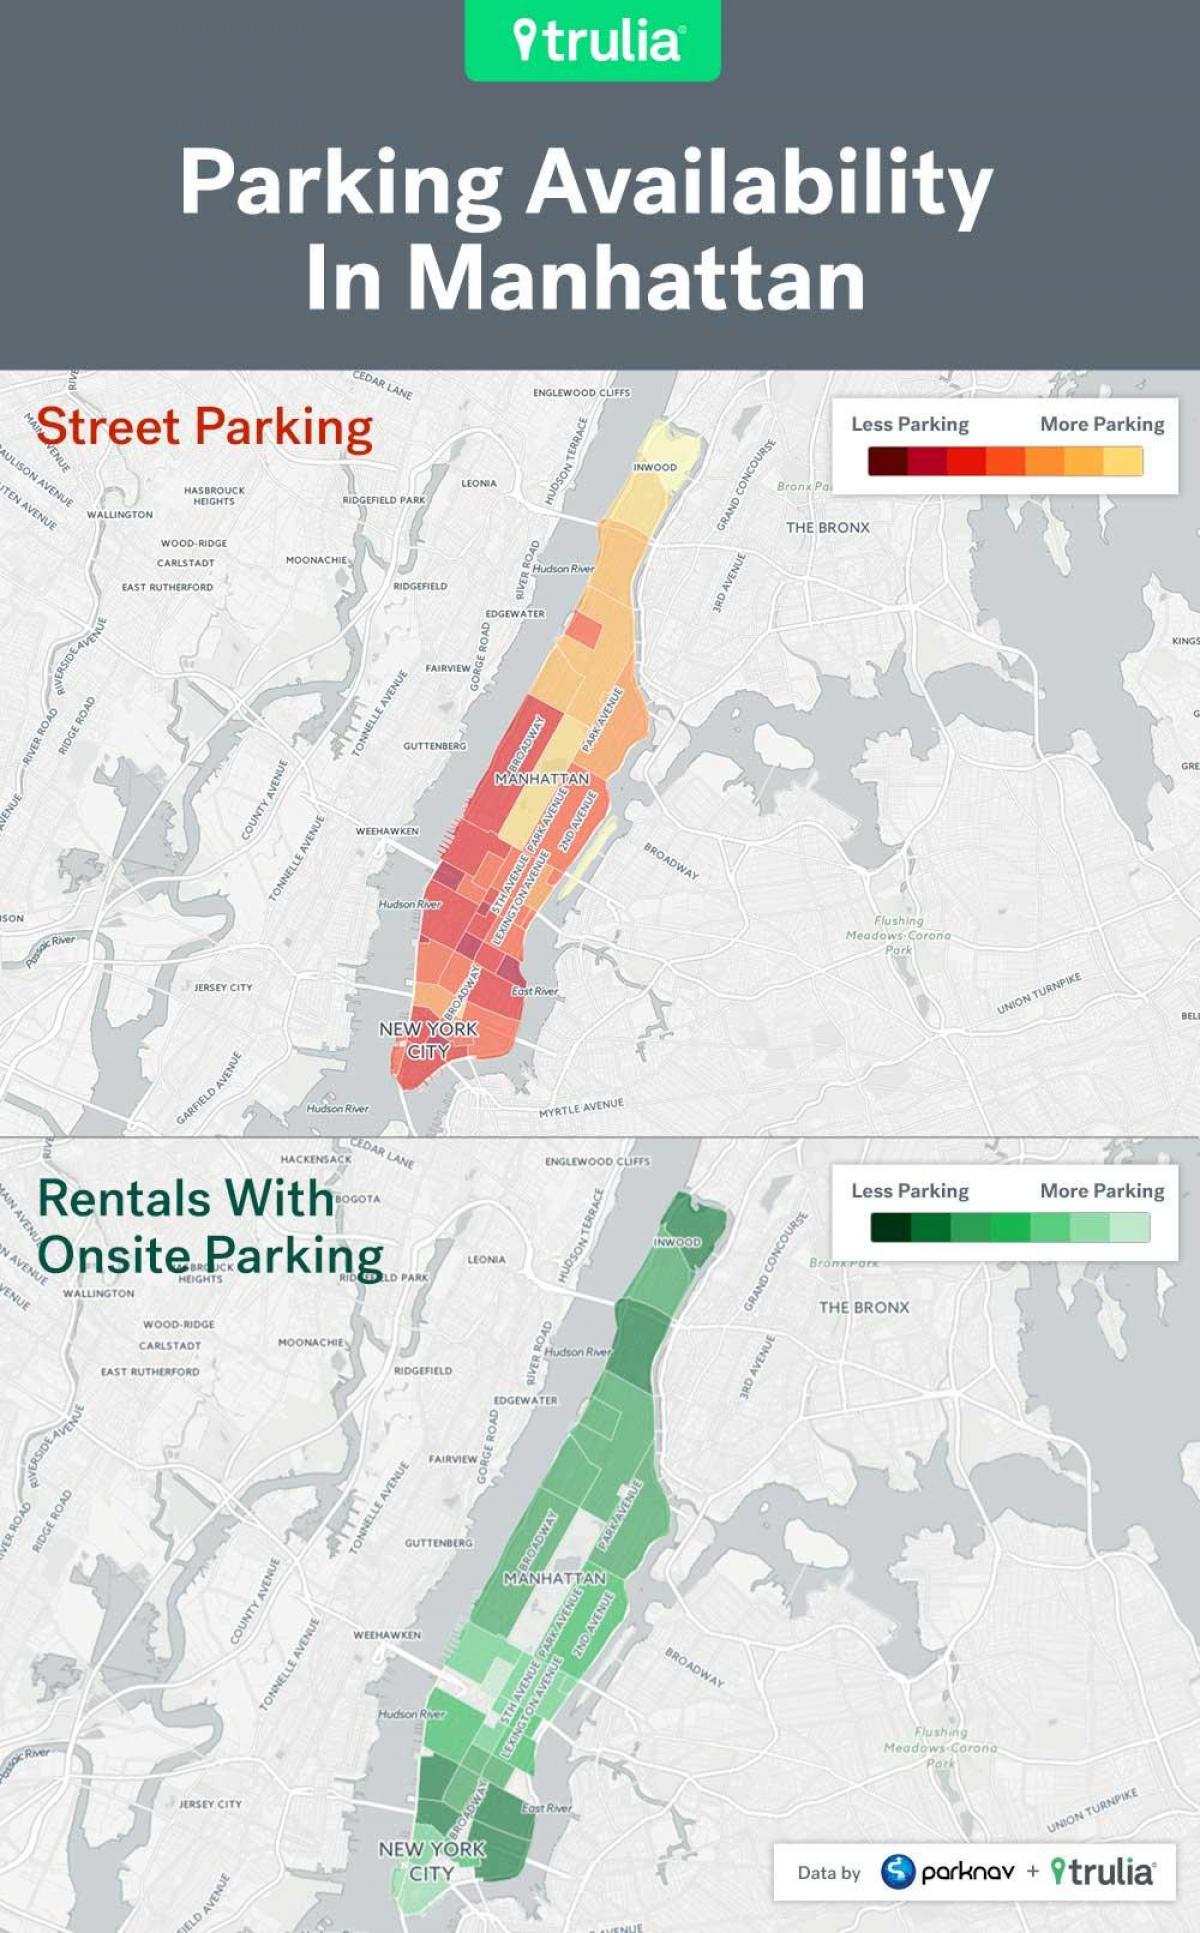 NYC gatvės automobilių stovėjimo aikštelė žemėlapis Manhattan